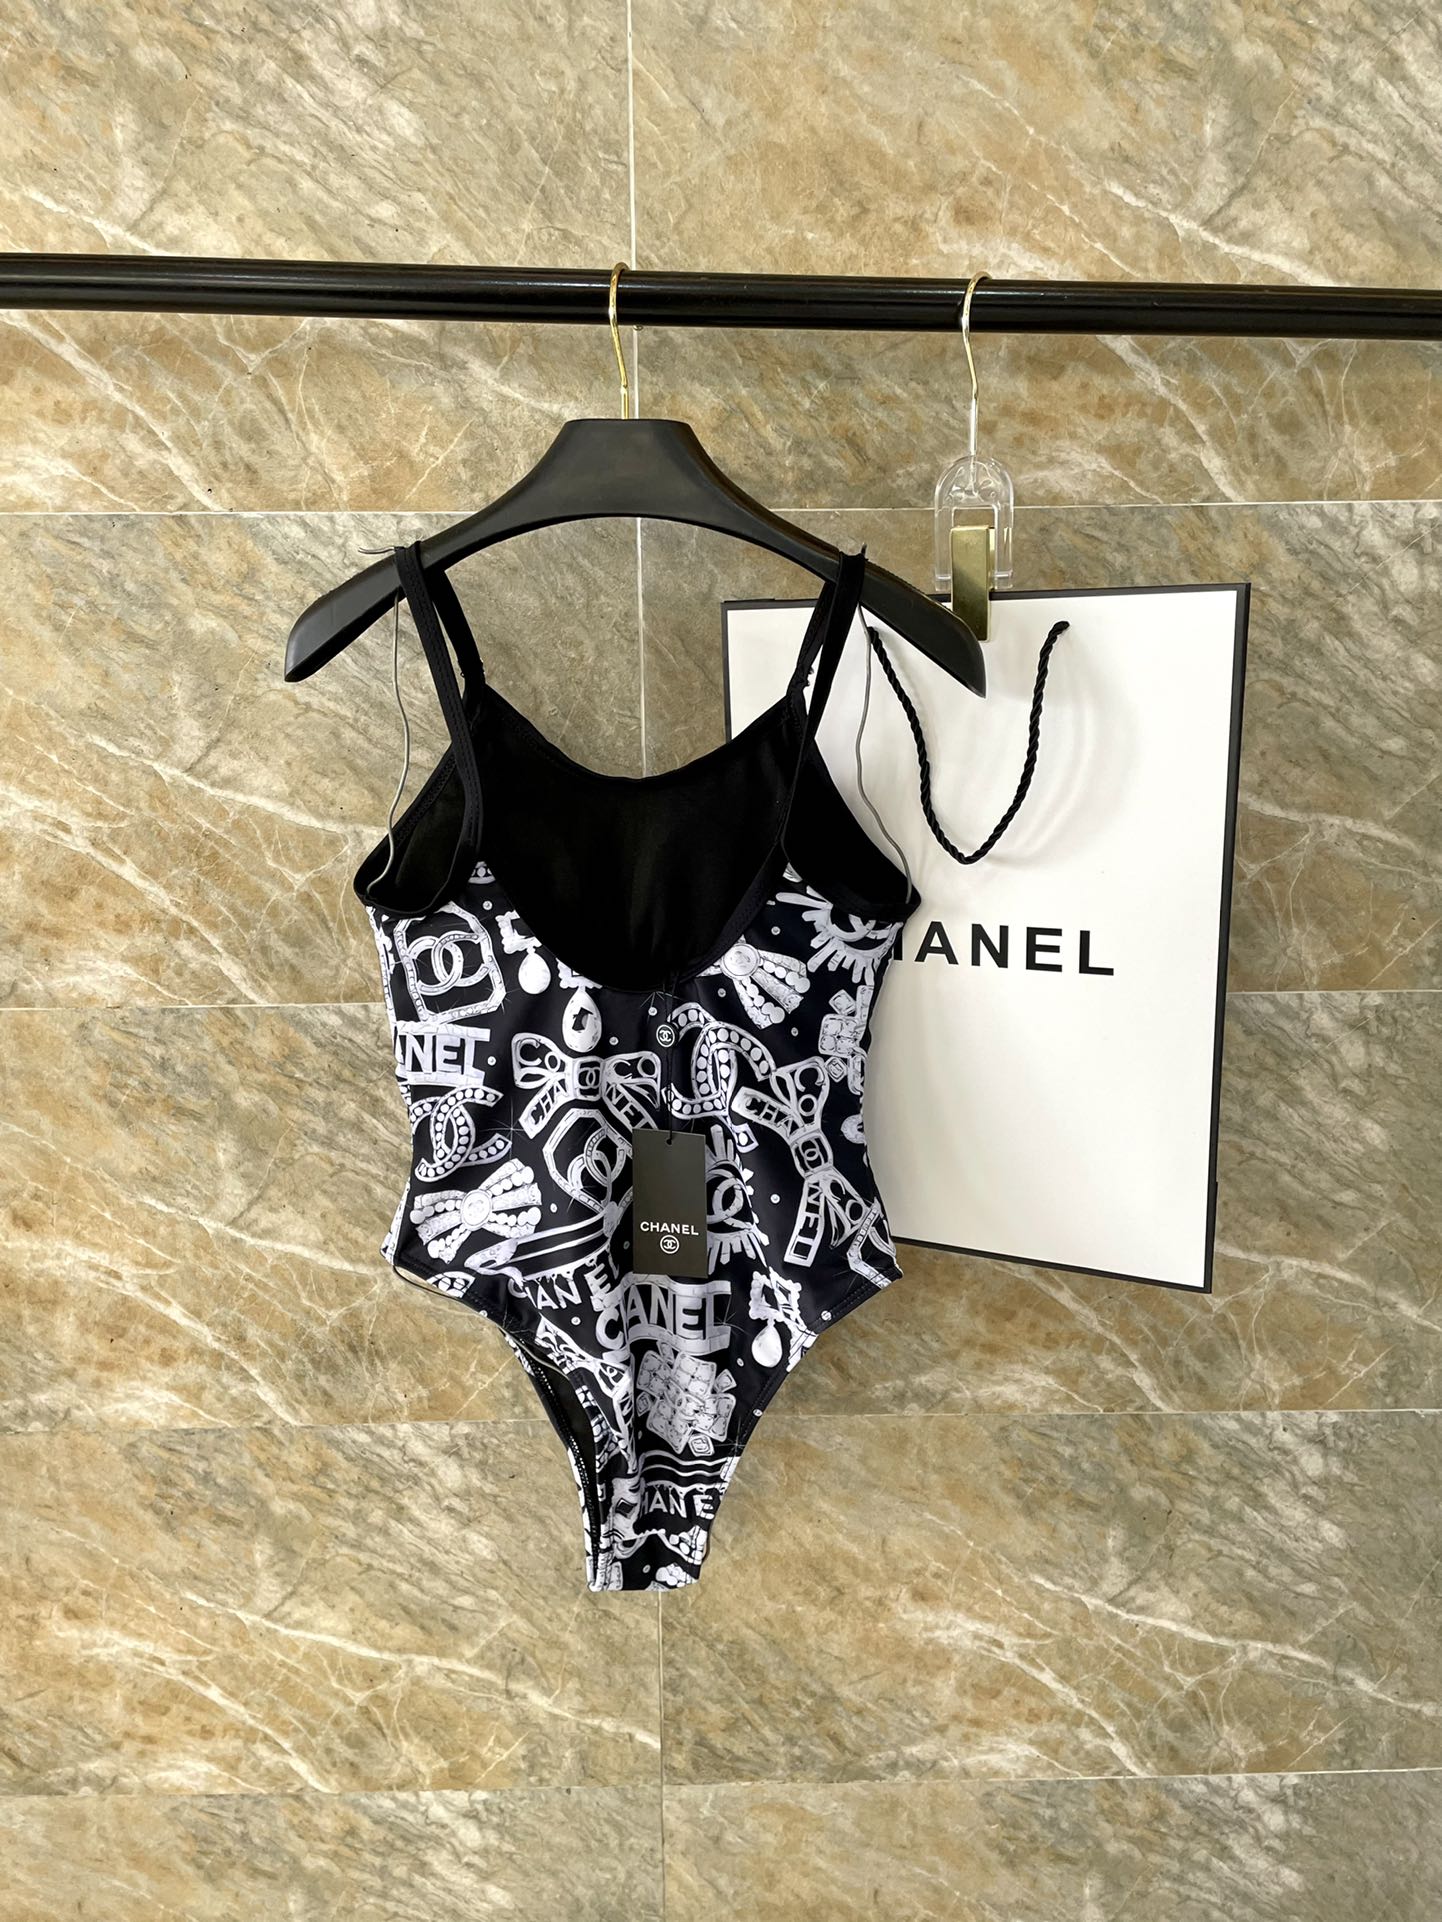 Chanel新款连体泳衣适合多种场景的游泳衣️海边游泳池温泉水上乐园漂流都可以内搭也完全可以连体设计遮肉